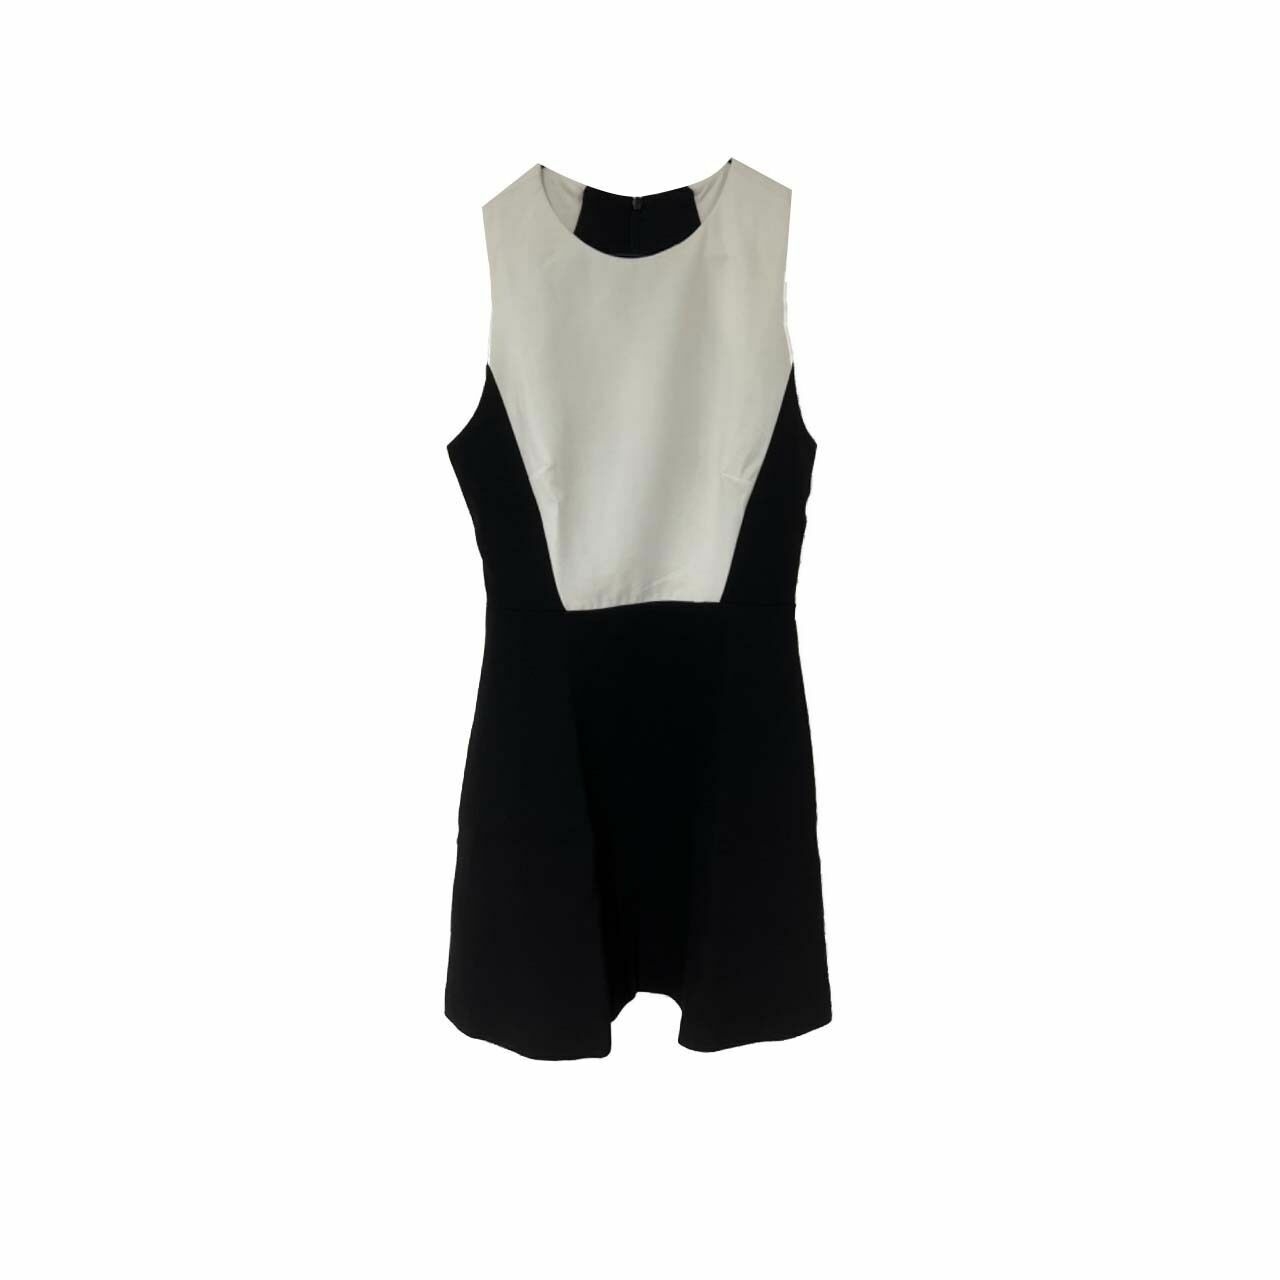 Zara Black & White Mini Dress